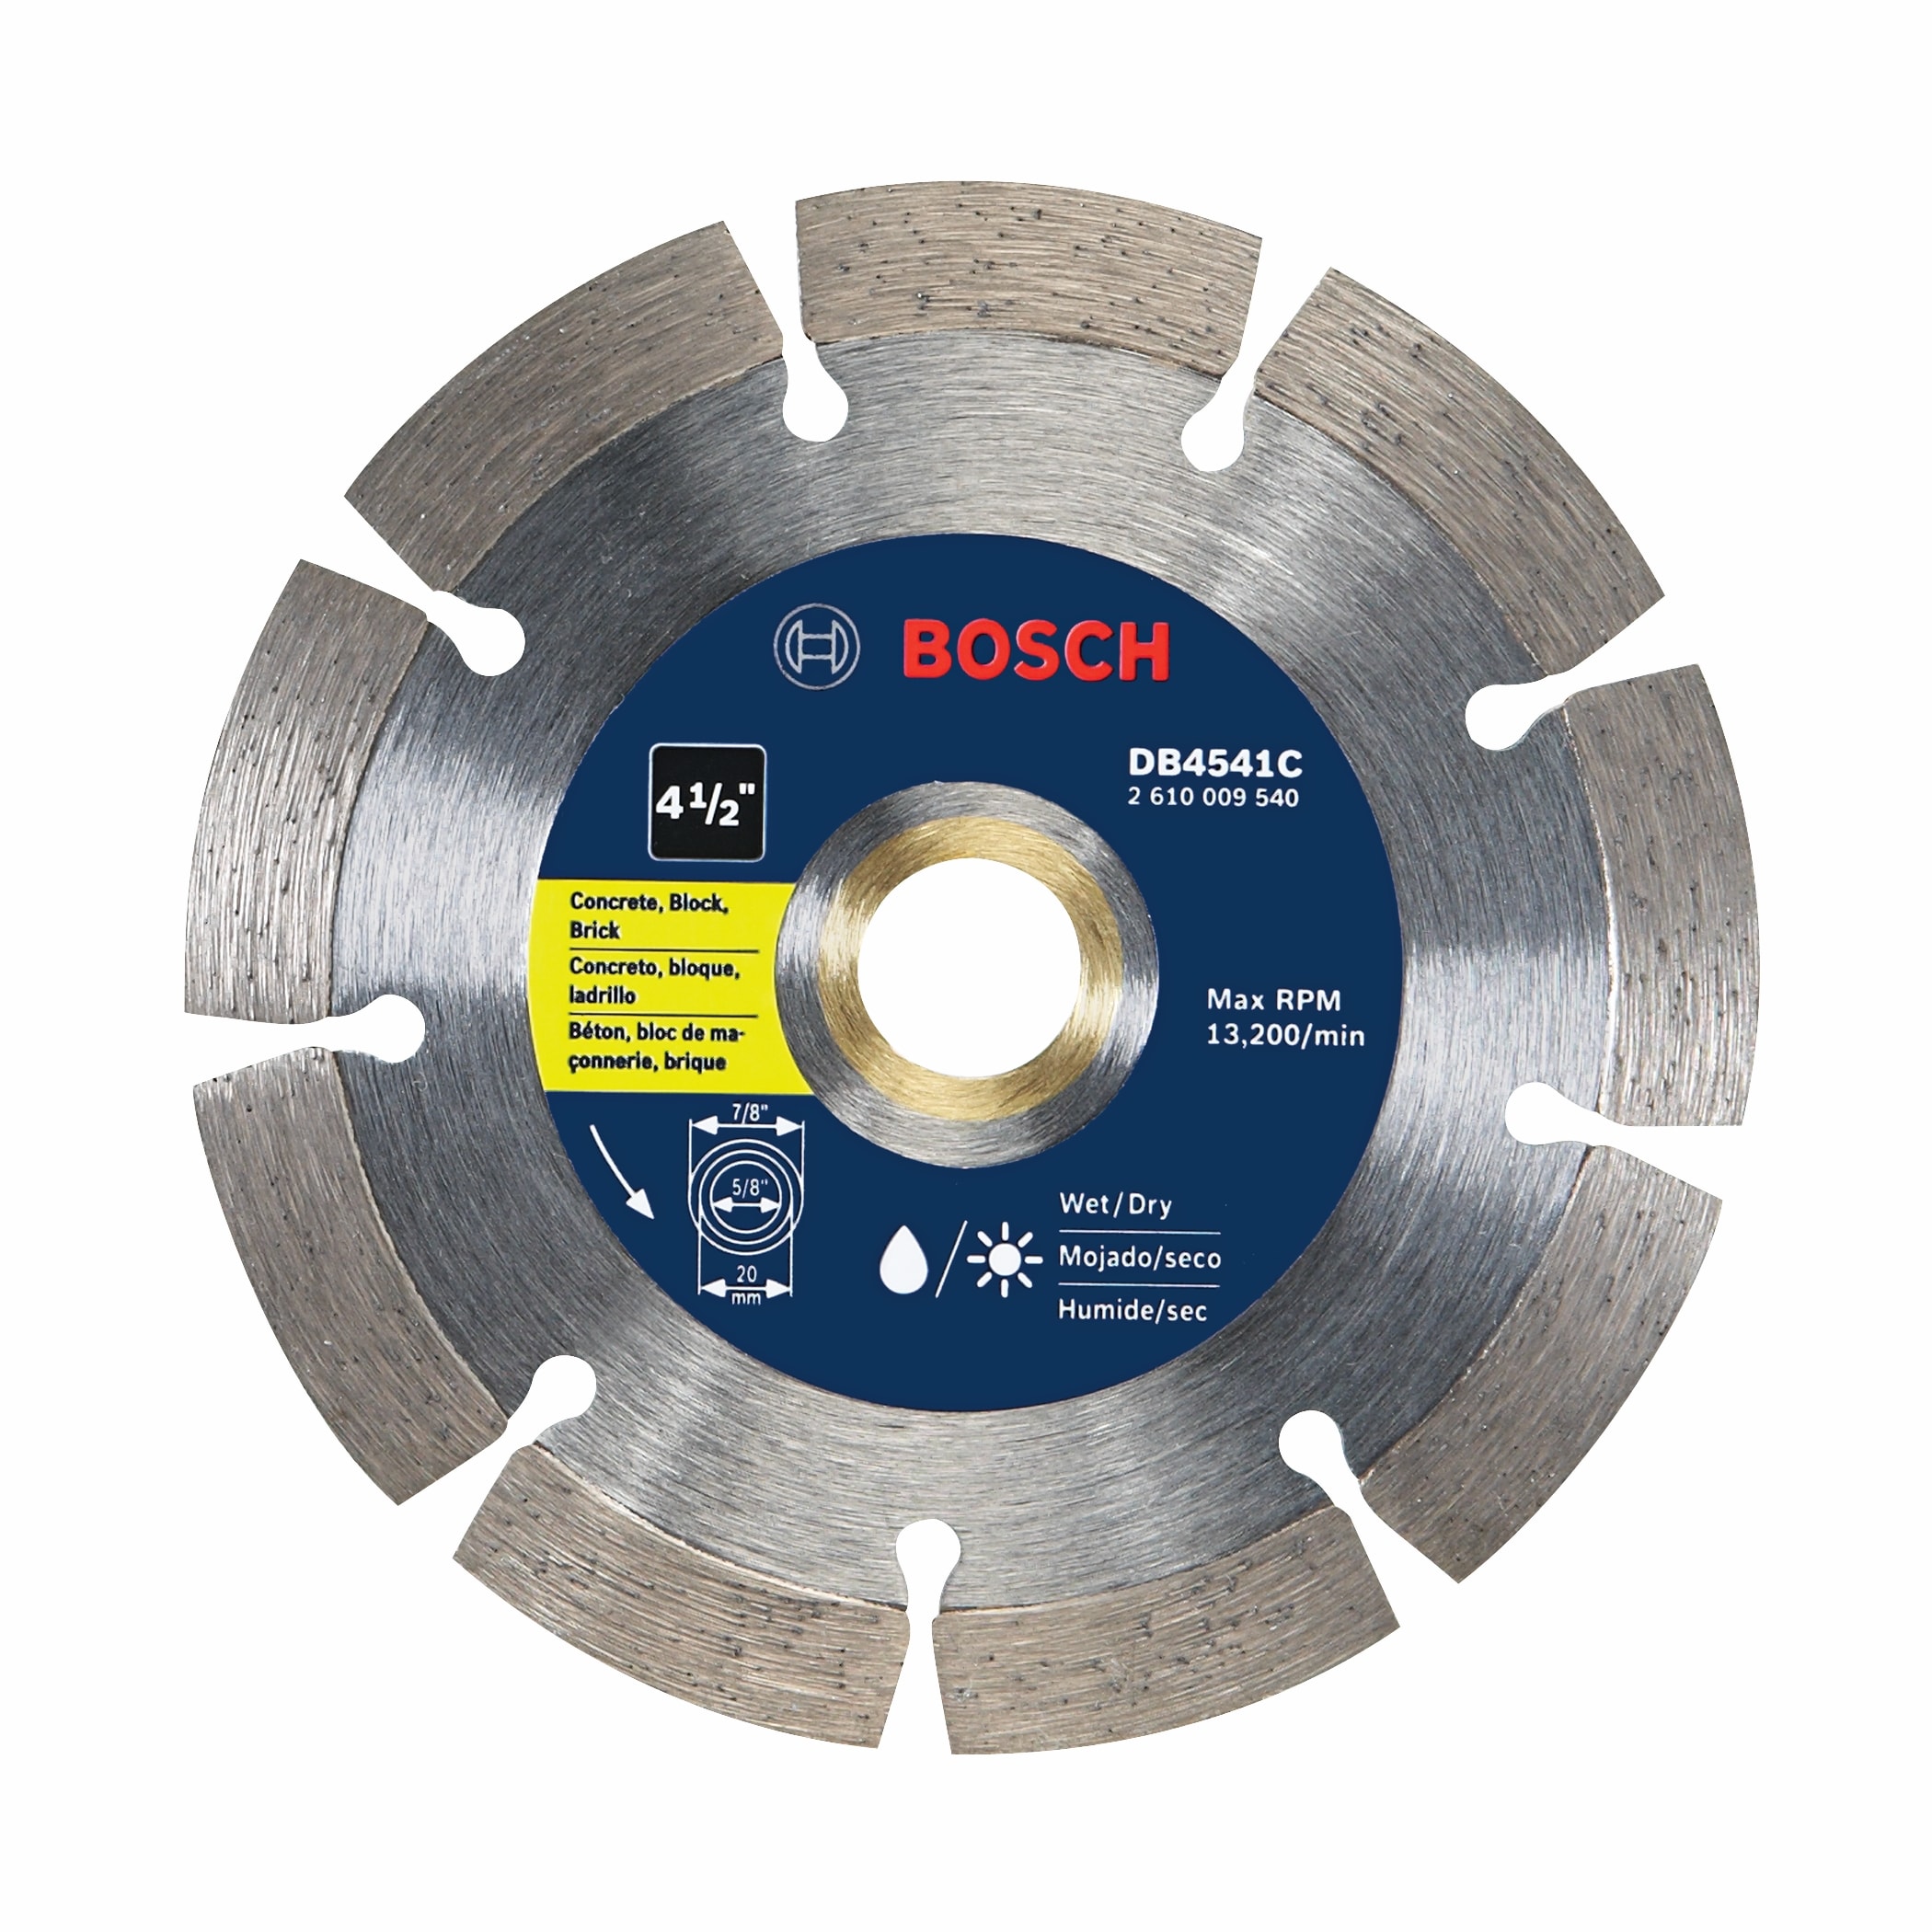 Bosch Bosch DB1265 Premium Plus 12" Dry or Wet Cut Segmented Diamond Saw Blade 